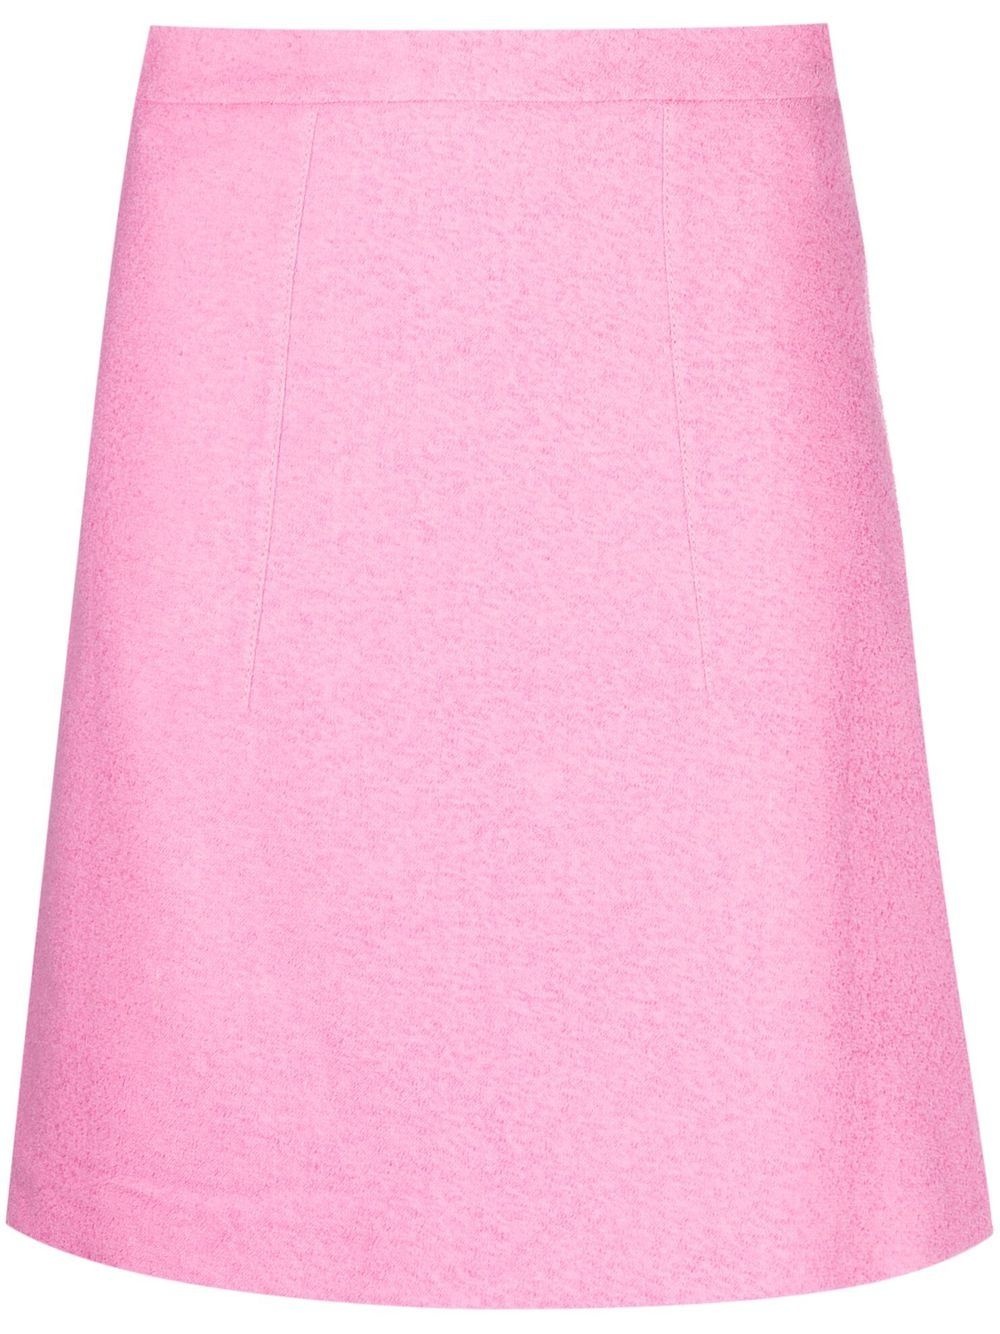 high-waisted A-line miniskirt - 1